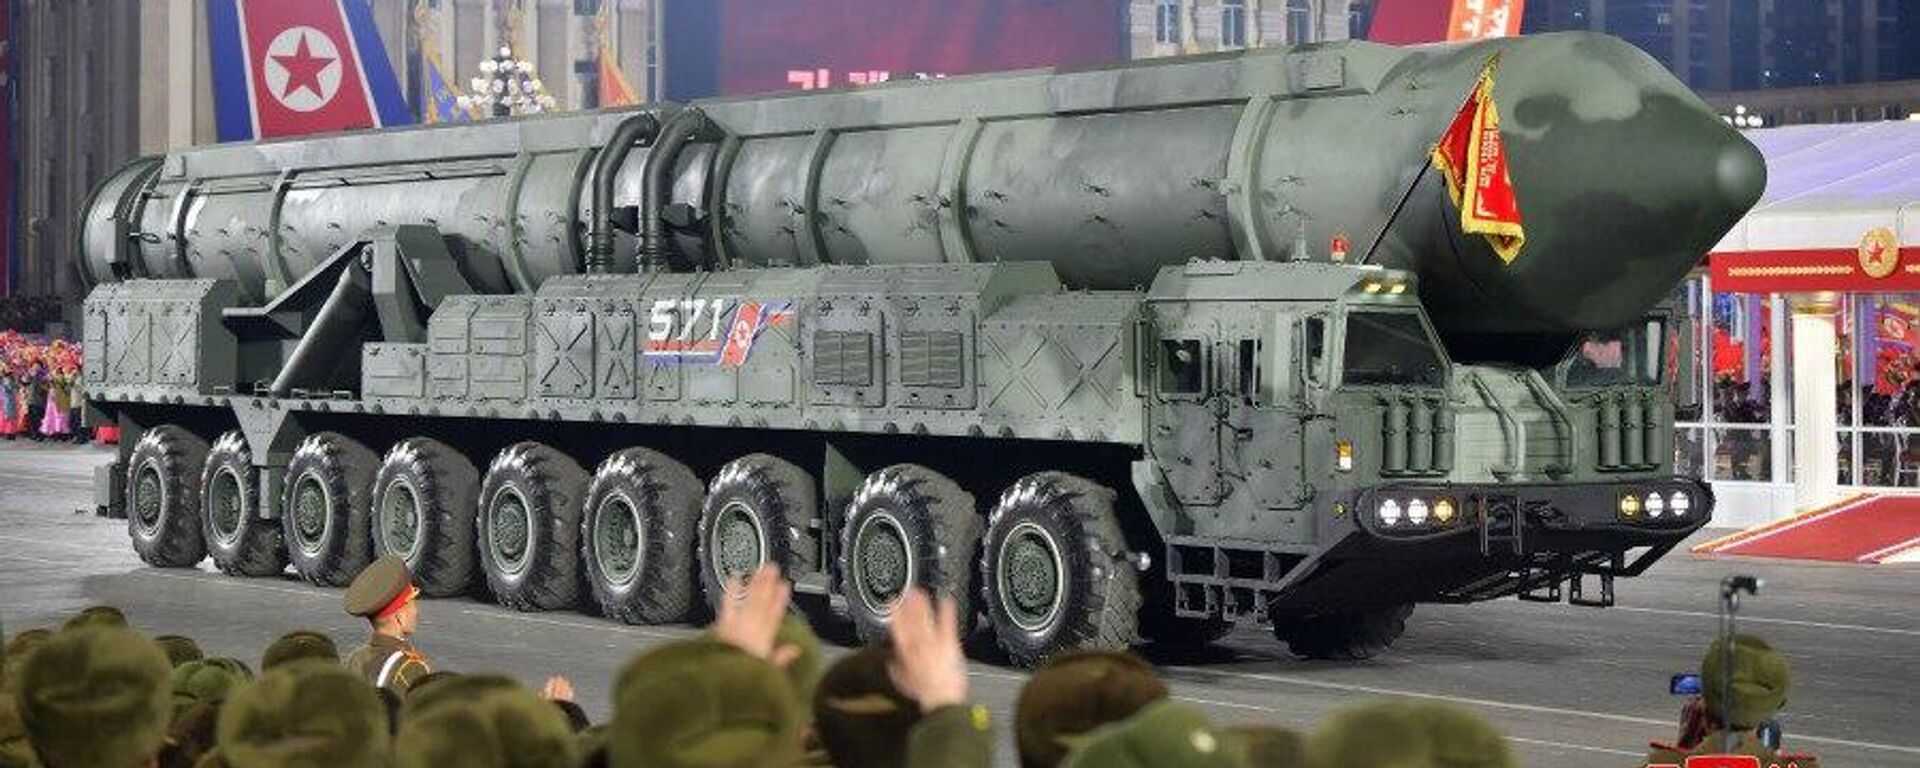 Coreia do Norte comemora 75 anos de seu Exército e mostra possível novo míssil intercontinental durante um grande desfile militar na capital norte-coreana, Pyongyang, em 8 de fevereiro - Sputnik Brasil, 1920, 21.04.2023